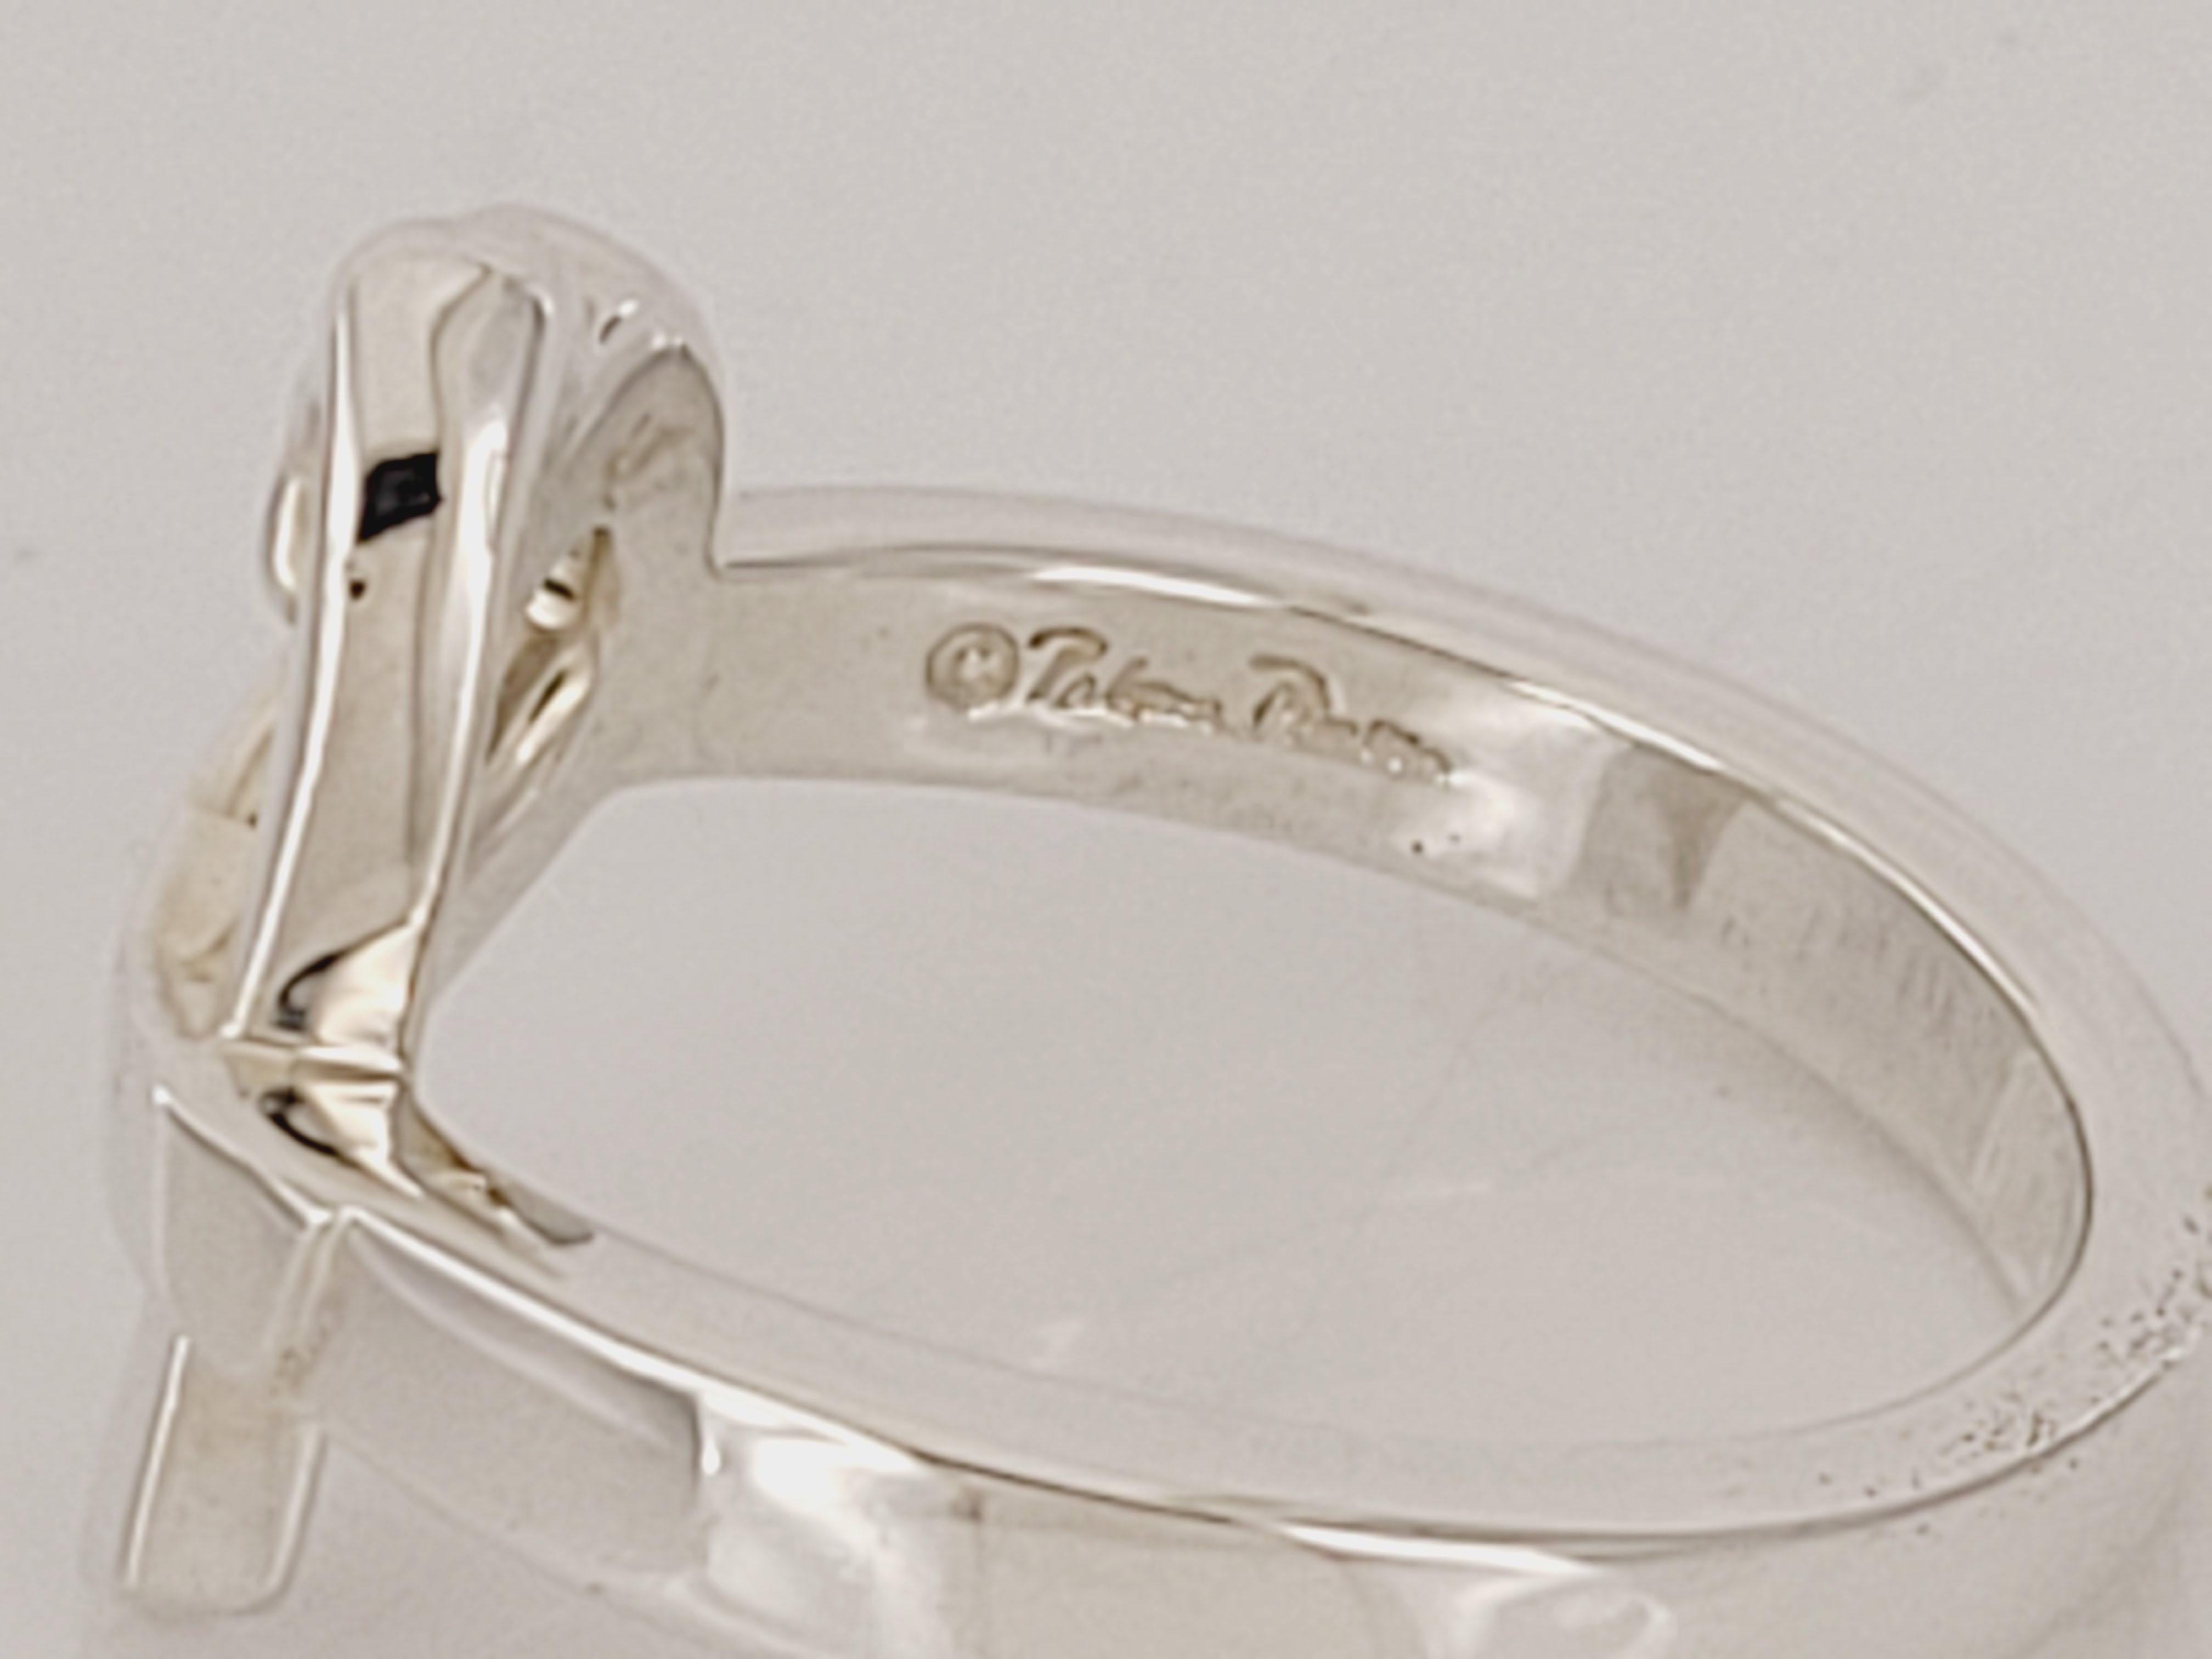 Bague Paloma Picasso pour Tiffany&co
Style : Cœur d'amour 
Argent sterling 925
Taille de l'anneau 6.75
Poids de l'anneau 4.8gr 
Condition New, avec étiquette
Livré avec une pochette Tiffany&.